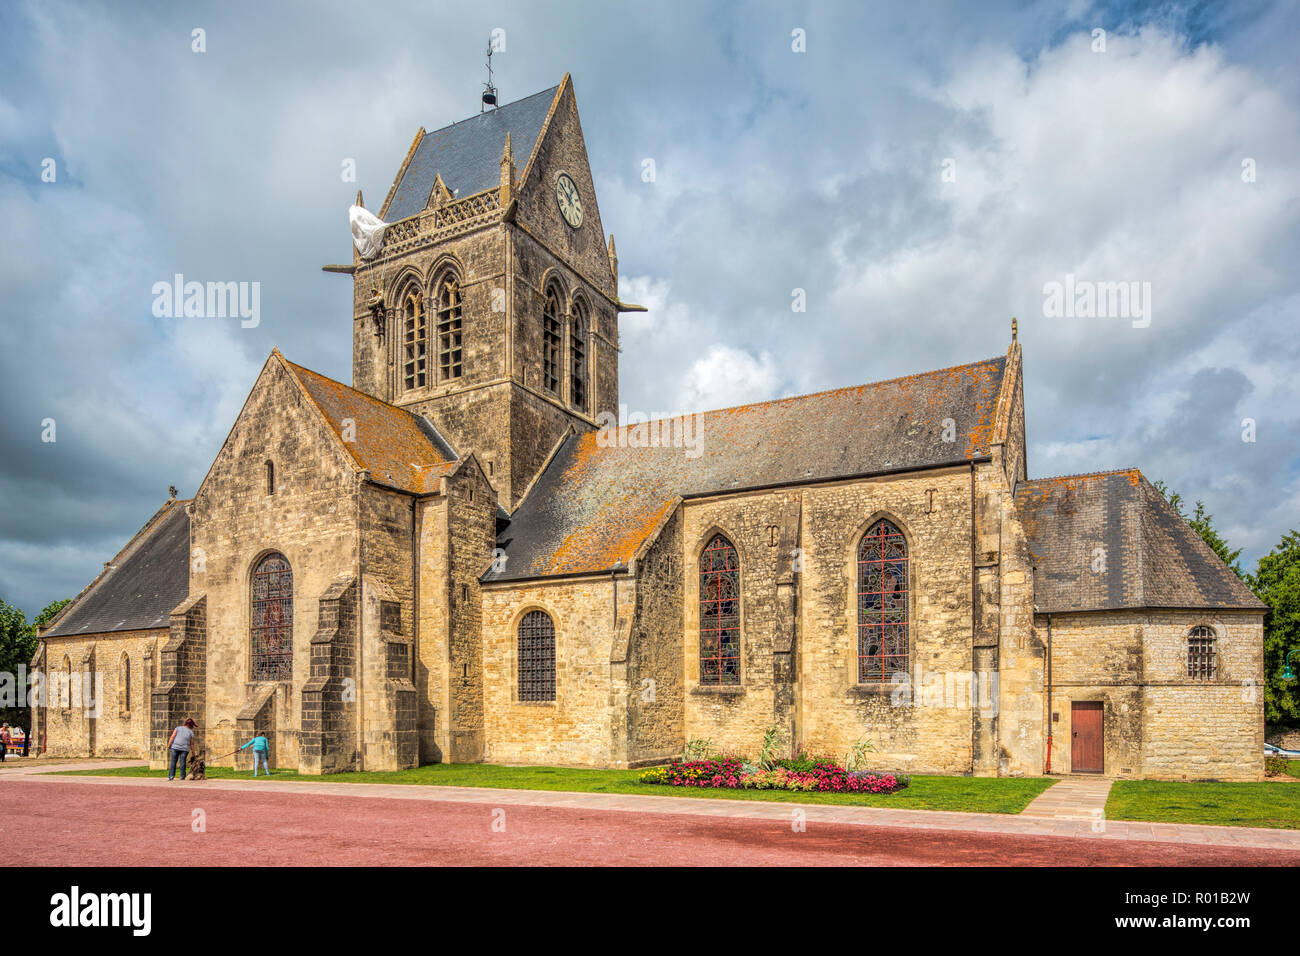 Église de Sainte-Mère-Église, la Normandie, avec le mémorial de parachute sur le clocher. La ville a joué un rôle important dans la seconde guerre mondiale, la Normandie Banque D'Images